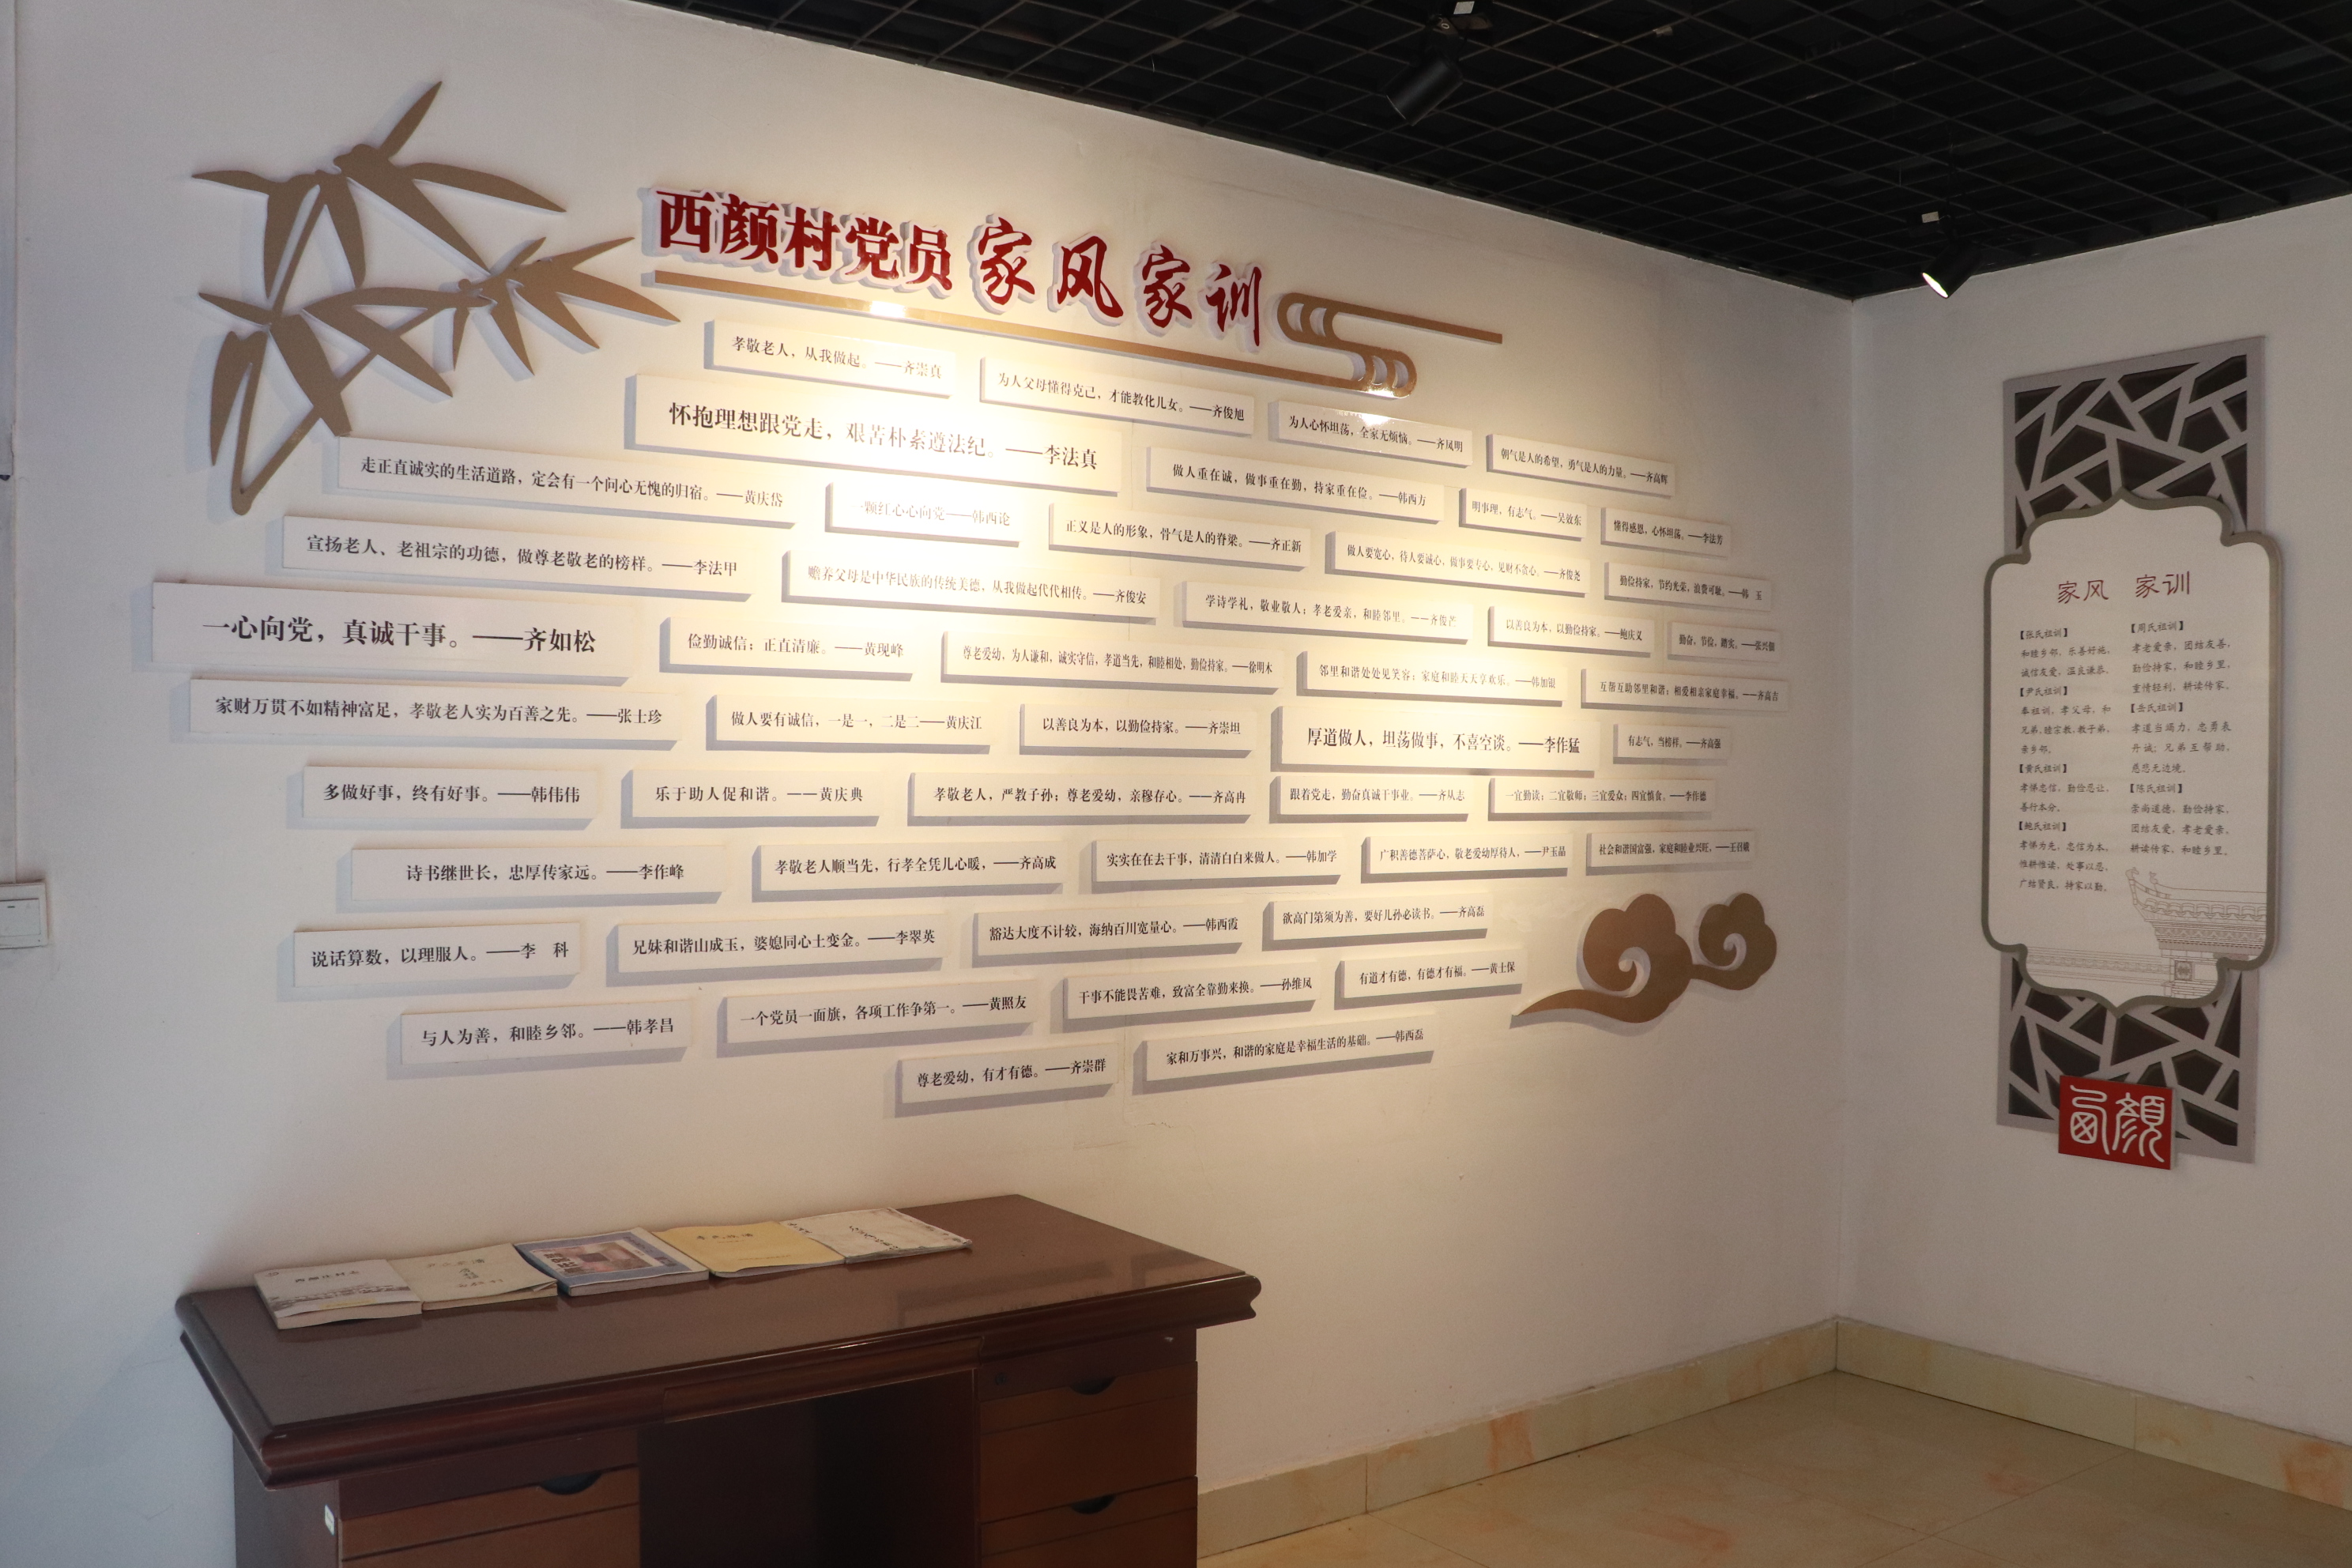 邹城市唐村镇西颜村家风馆内的家风家训展示墙。